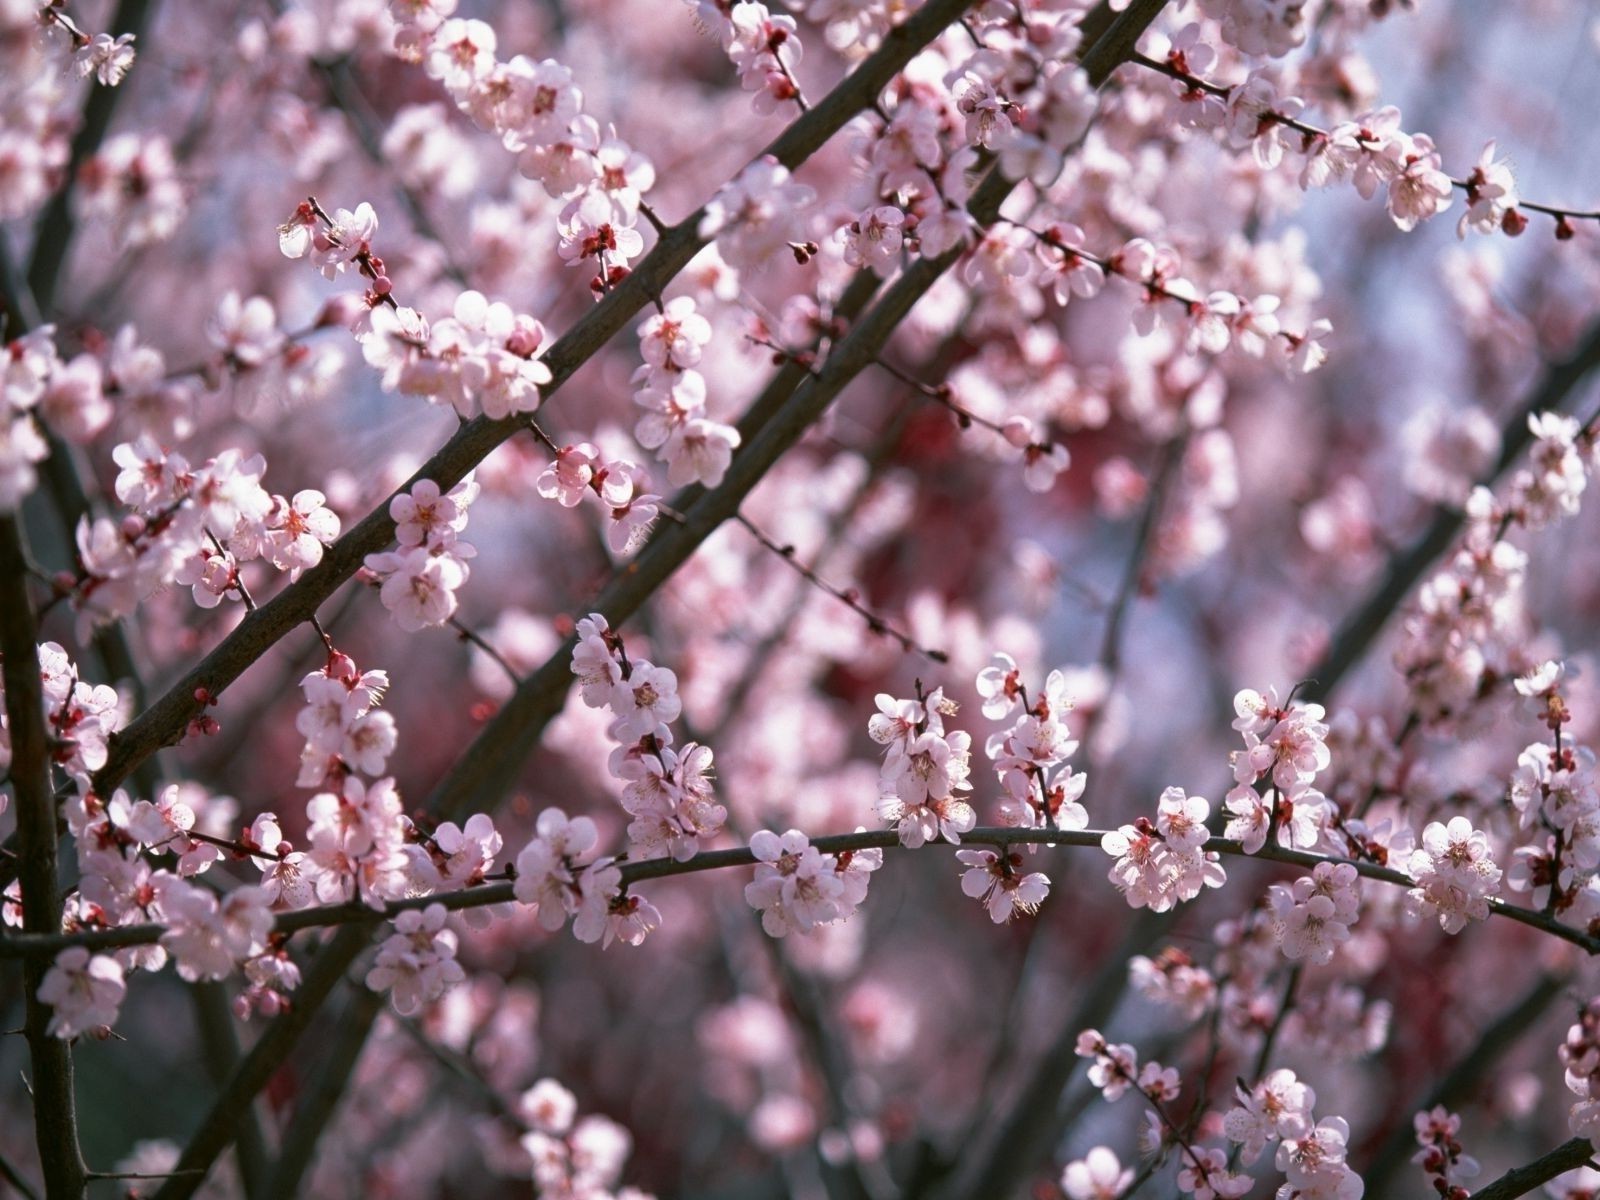 весна вишня цветок дерево филиал природа сливы сезон флора рост дружище яблоко весна блюминг лист абрикос лепесток персик яркий миндальное